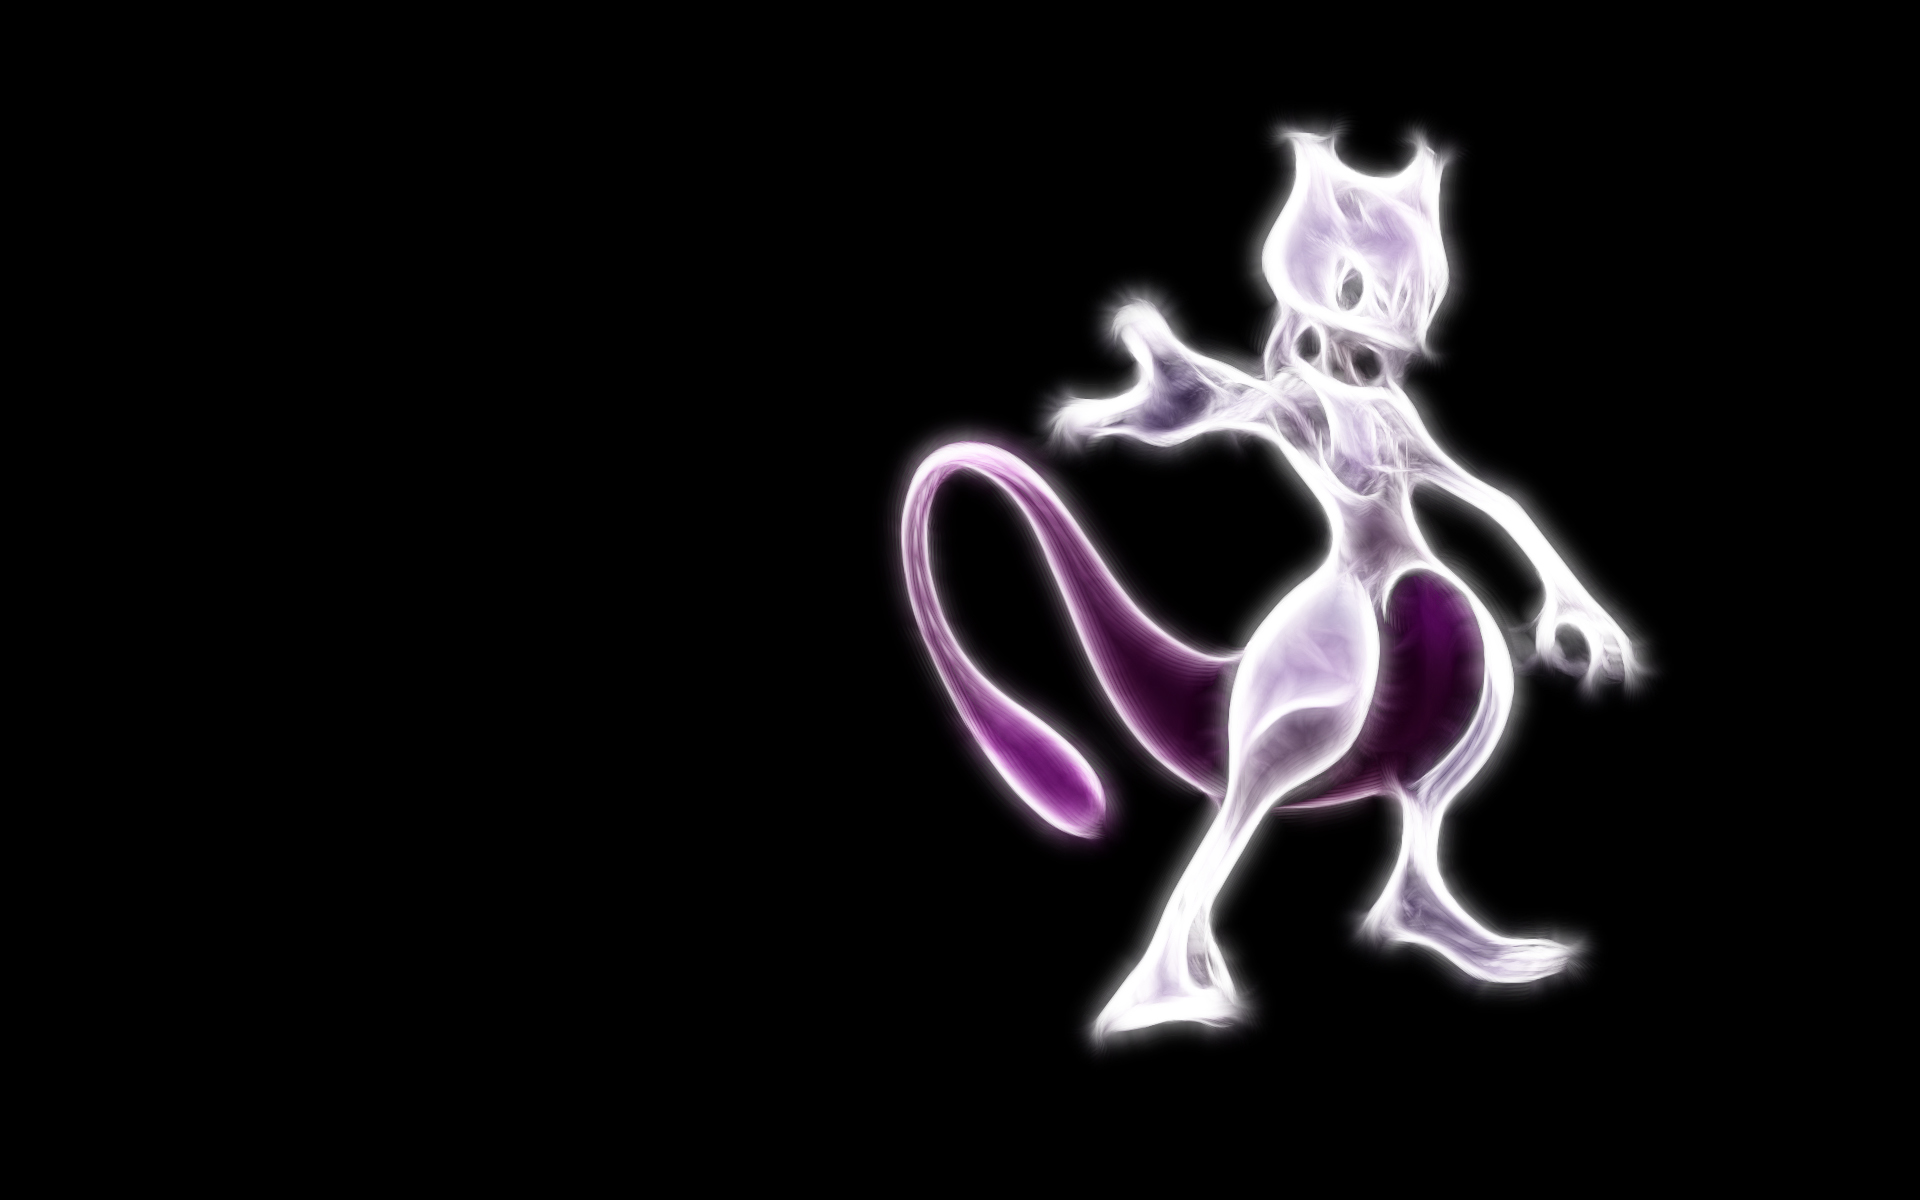 Mewtwo Pokémon's glowing tail.